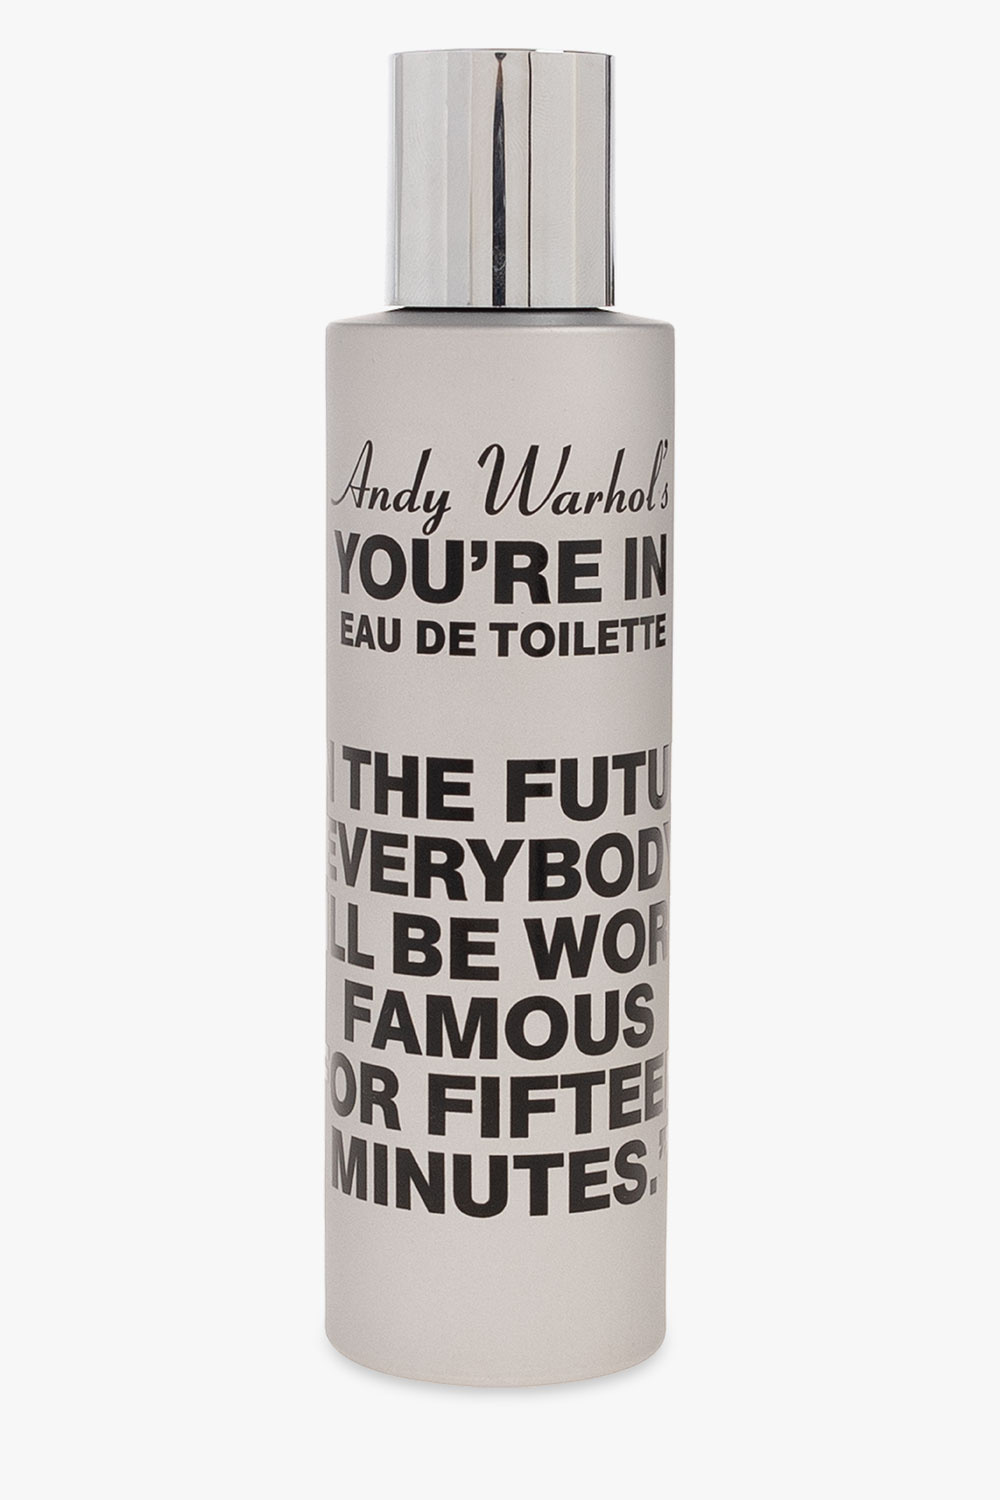 Comme des Garçons ‘Andy Warhol's You're In’ eau de toilette